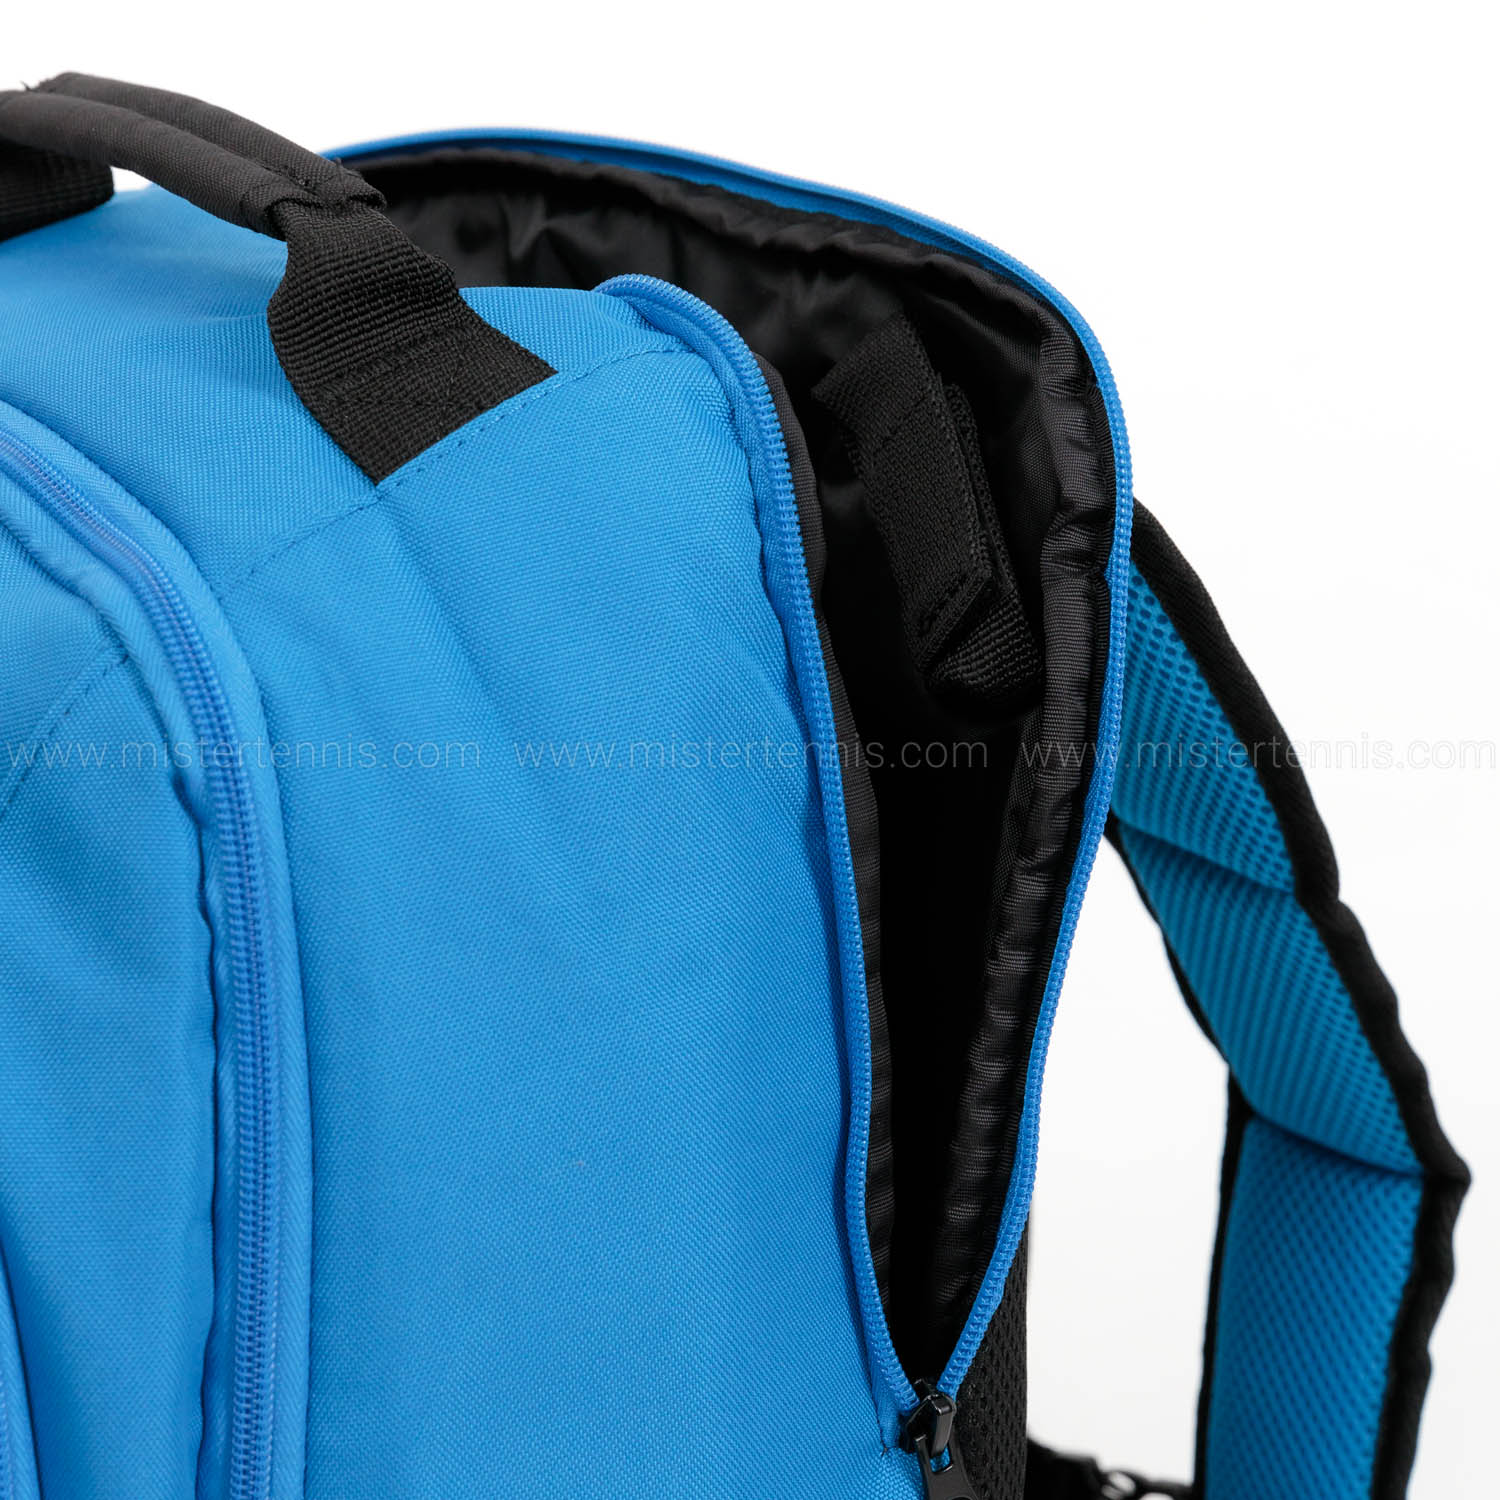 Dunlop FX Performance Backpack - Black/Blue